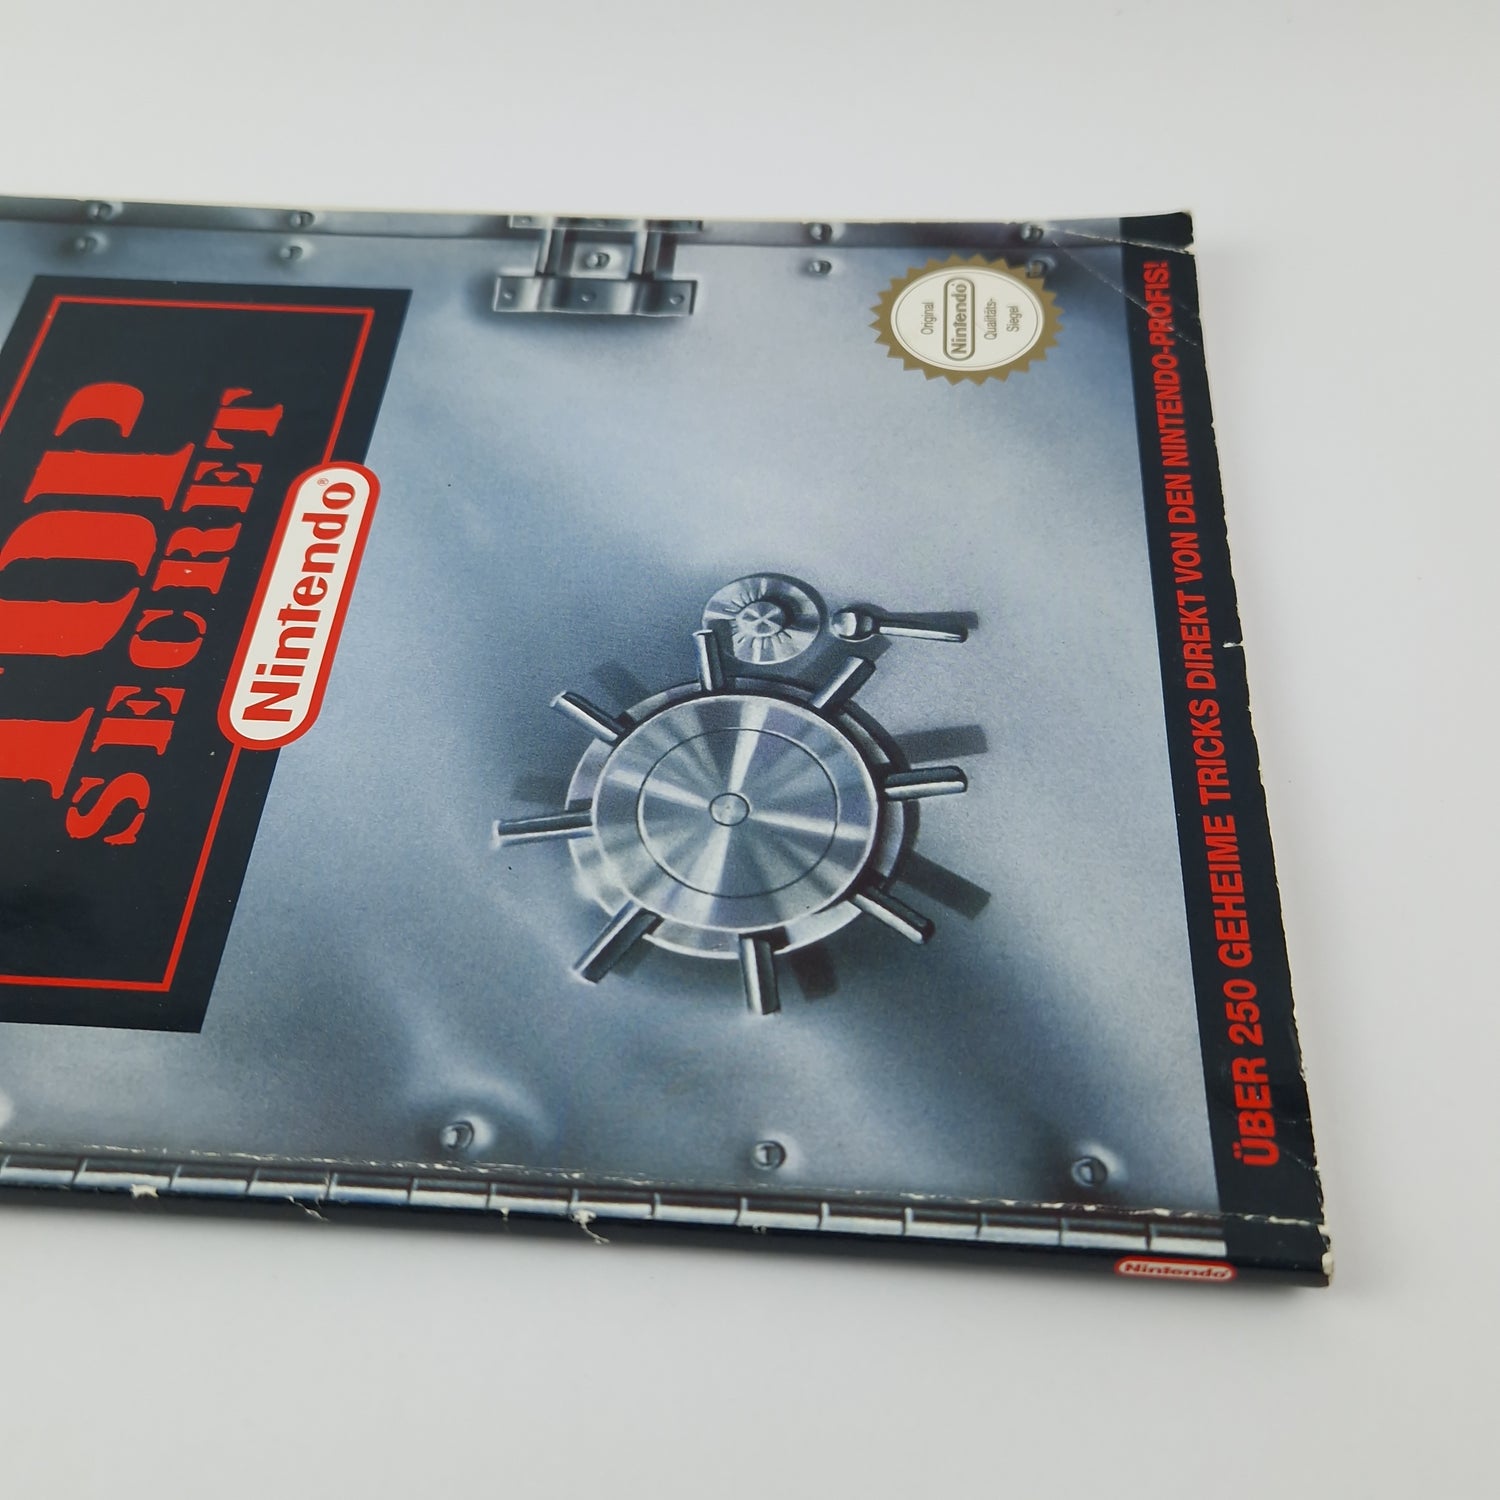 The official Nintendo game advisor: TOP SECRET - Solution book SNES Book Guide